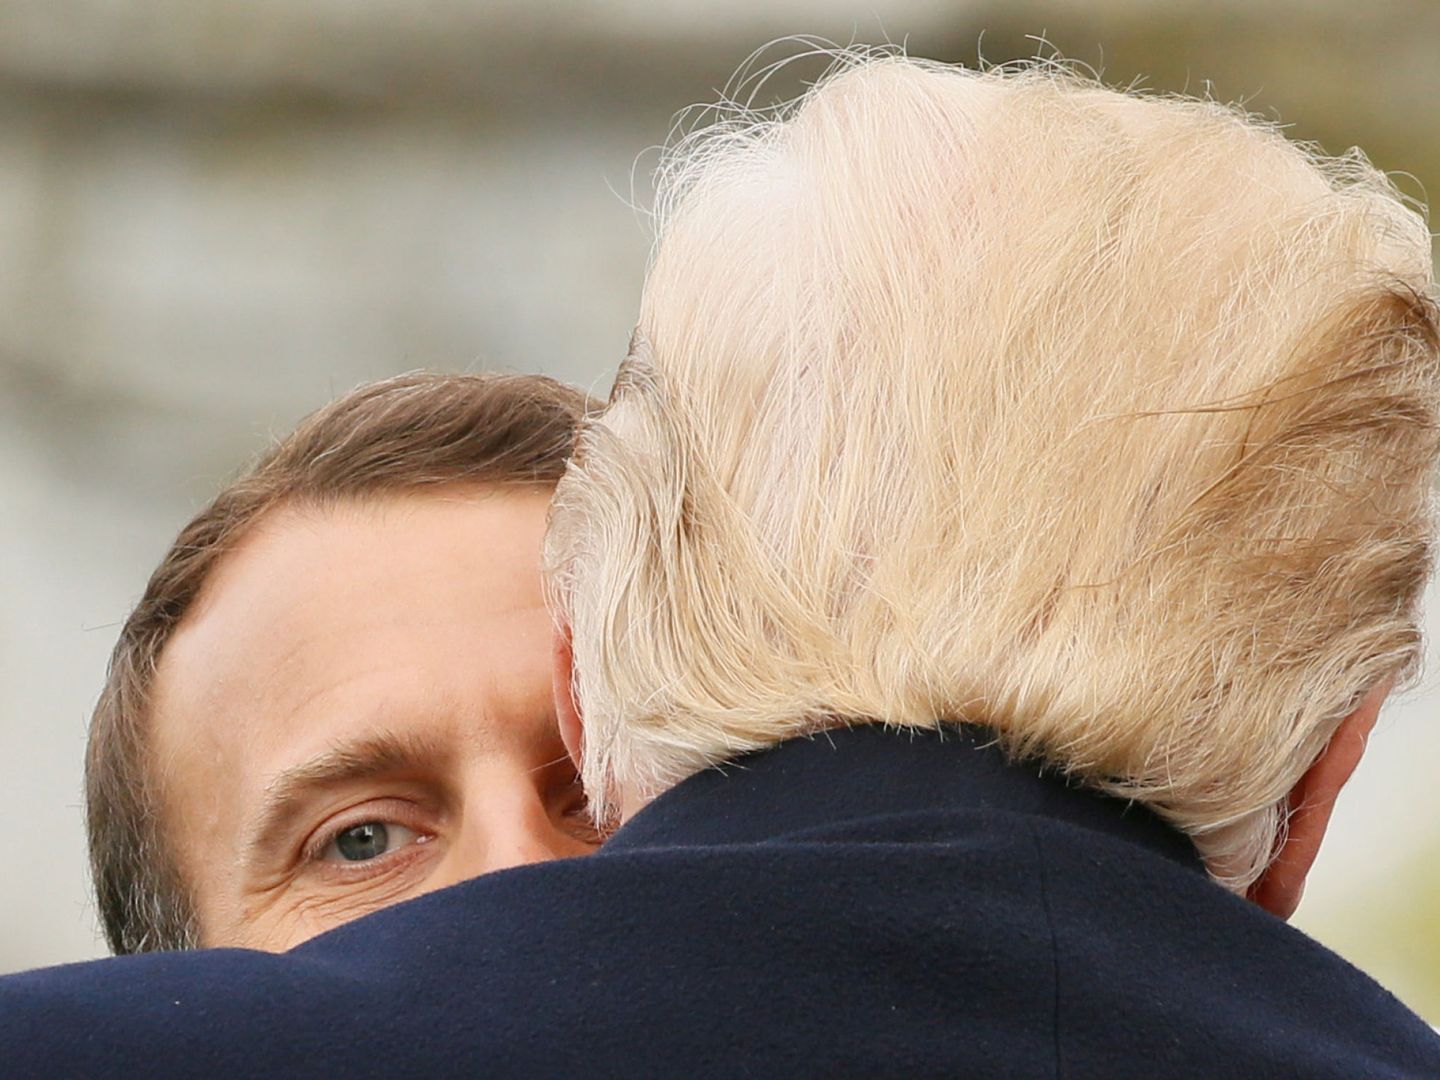 Macron mira por encima del hombro de Trump mientras este le abraza, durante la ceremonia de bienvenida del presidente francés en la Casa Blanca, el 24 de abril de 2018. (Reuters)